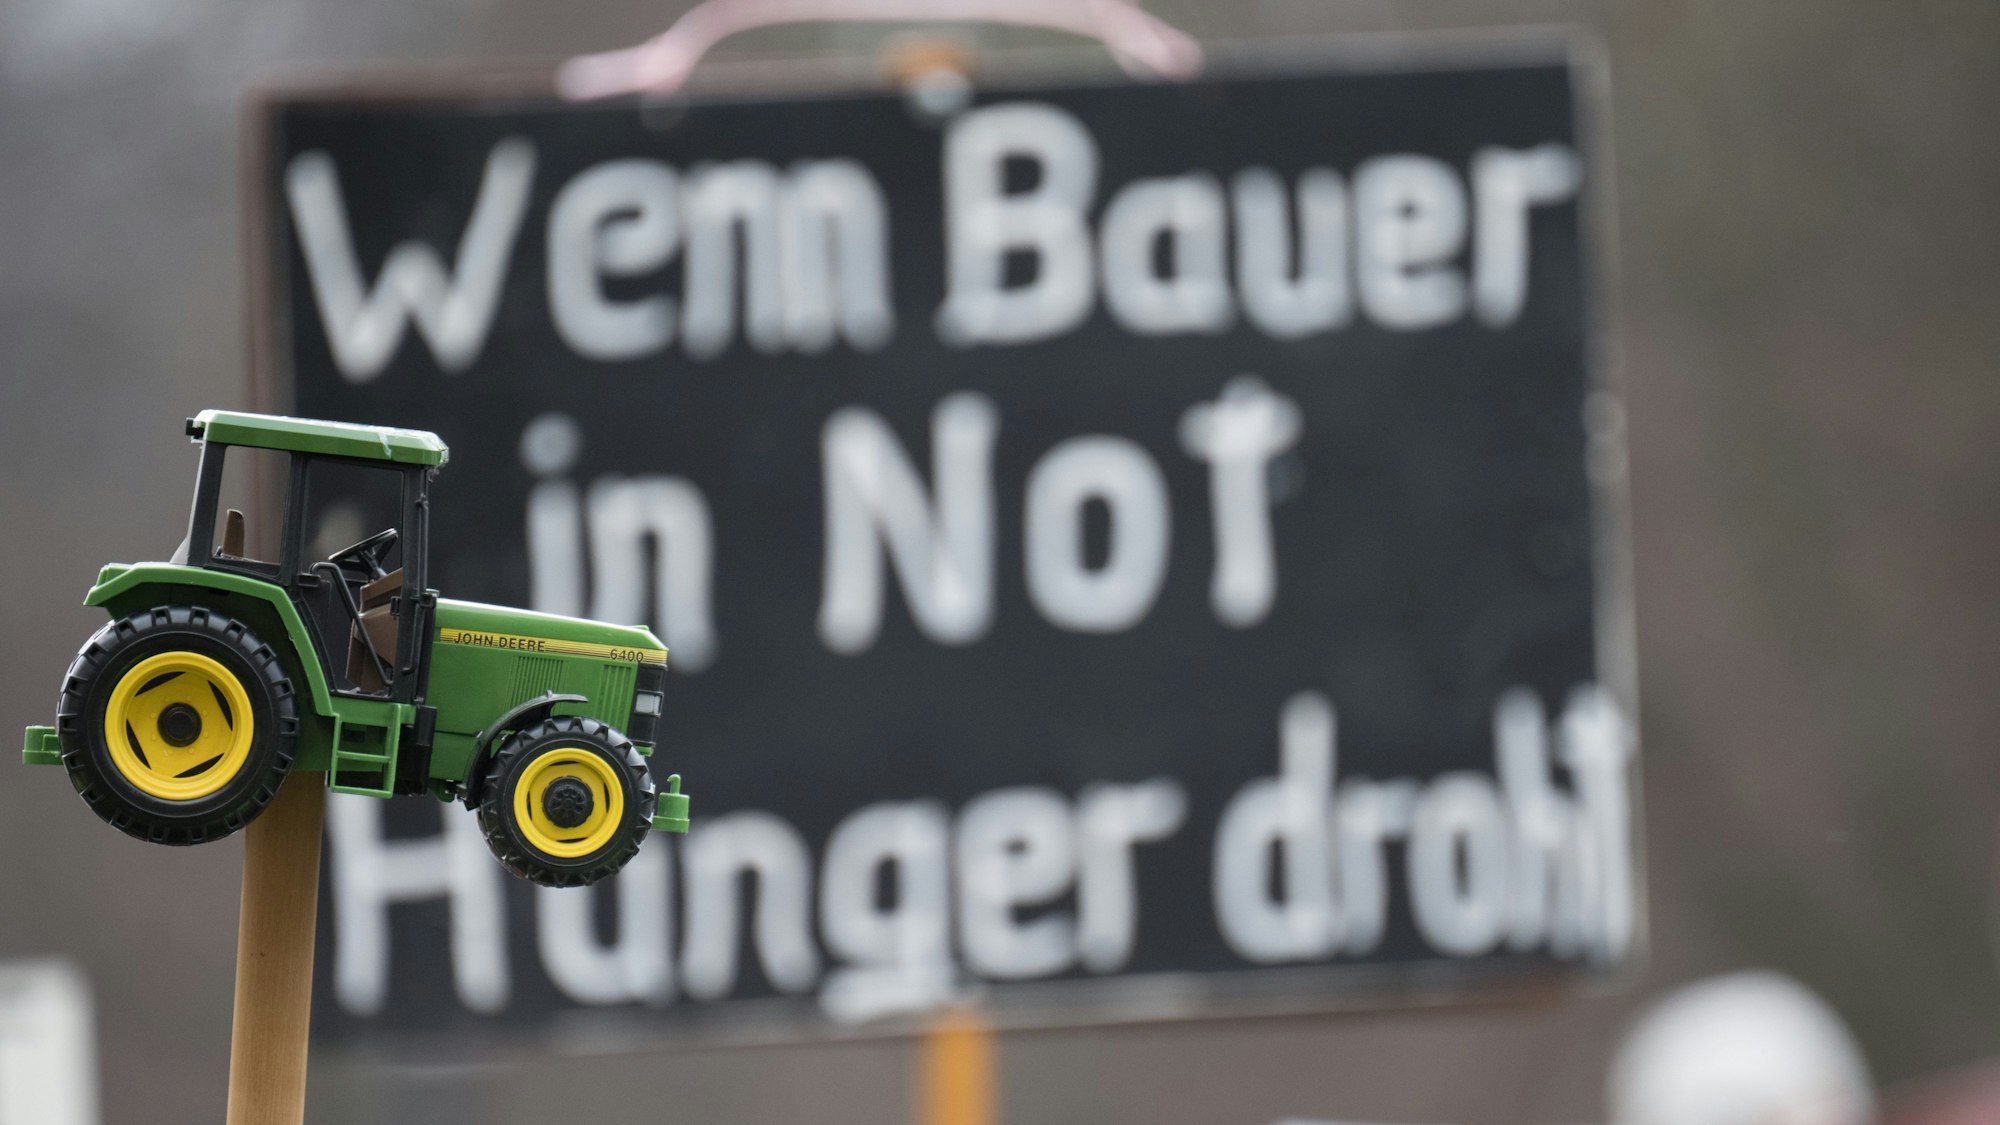 „Wenn Bauer in Not Hunger droht“ steht während einer Demonstration in Berlin auf einem Plakat, davor ist ein Spielzeugtraktor zu sehen.